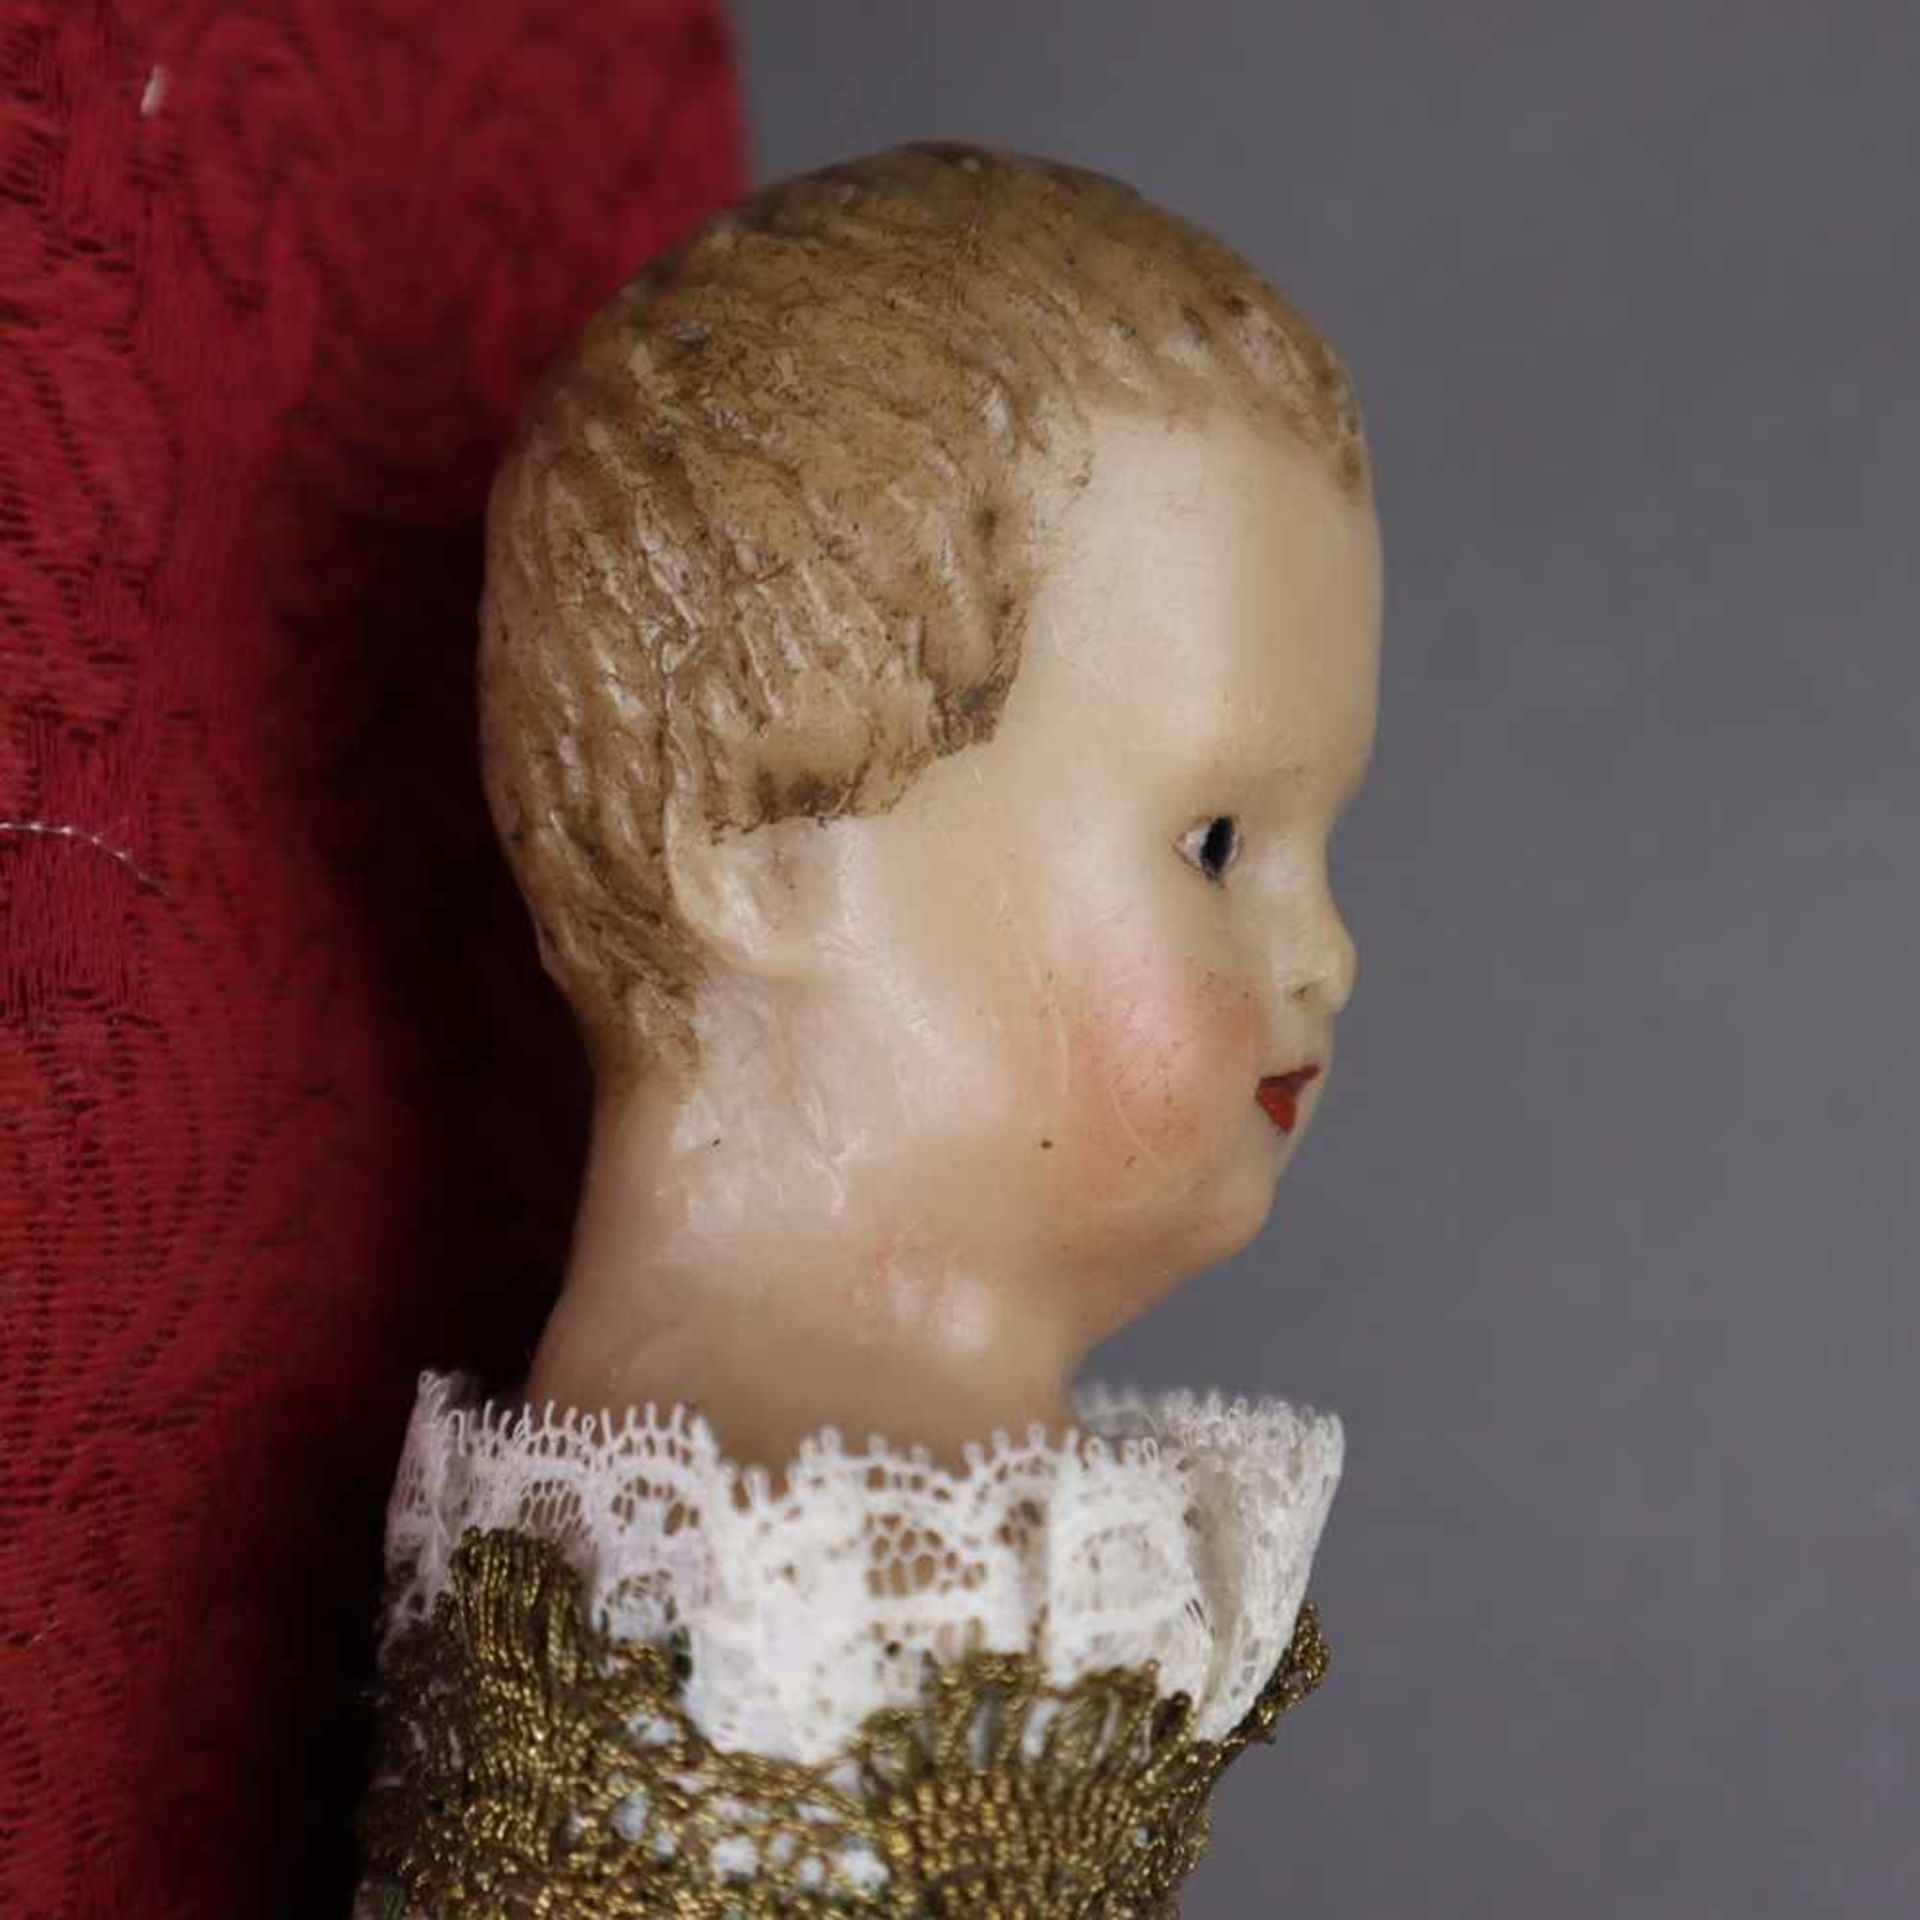 Fatschenkind - Kopf aus Wachs, farbig gefasst, Wickelung mit Stoff und (Gold-)spitze sowie - Bild 3 aus 6